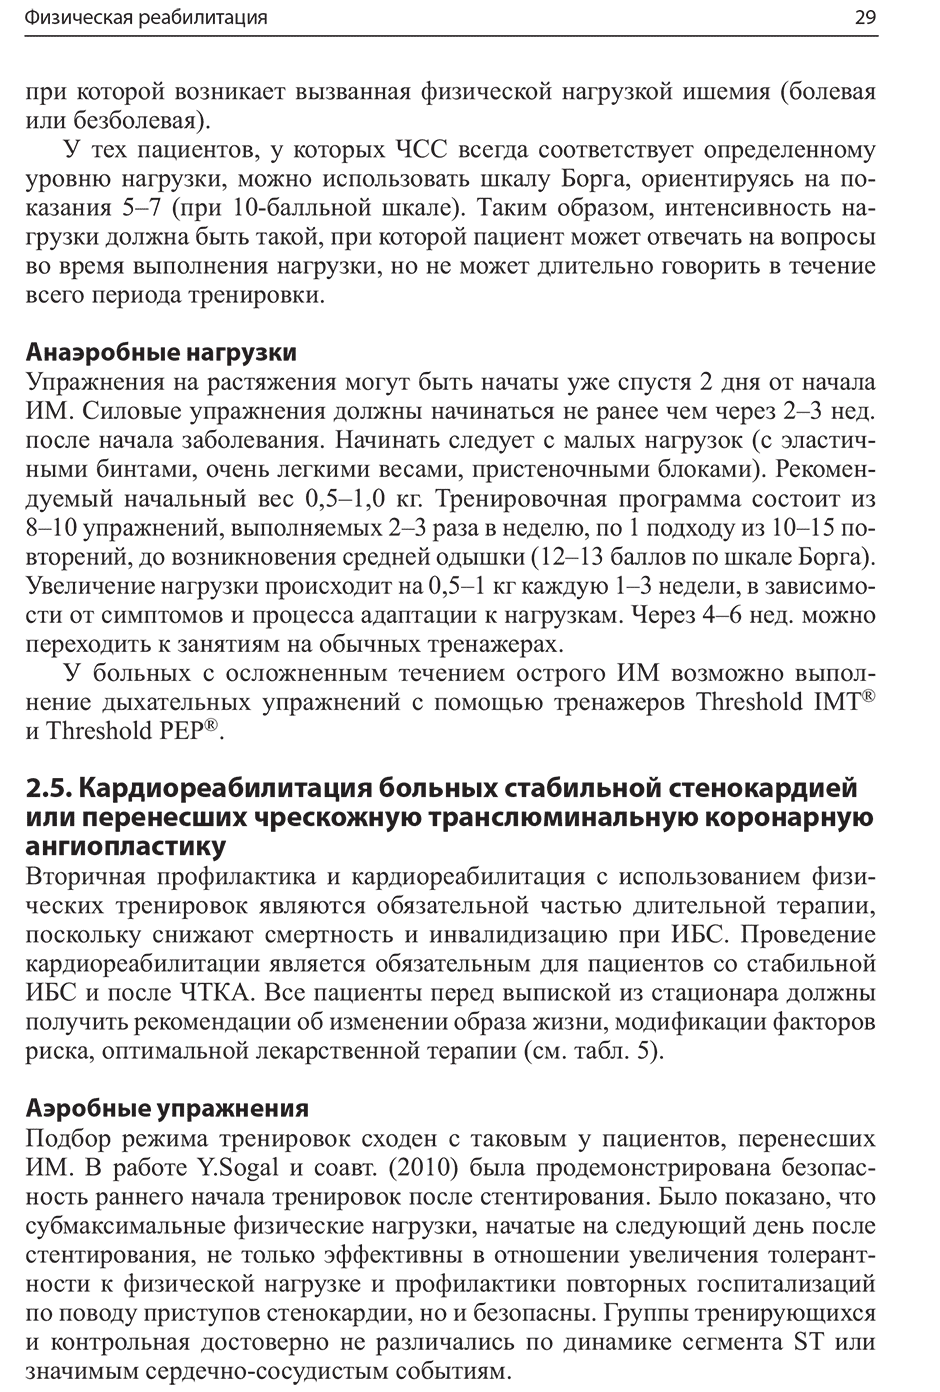 Пример страницы из книги "Кардиореабилитация" - Арутюнов Г. П., Рылова А. К., Колесникова Е. А.